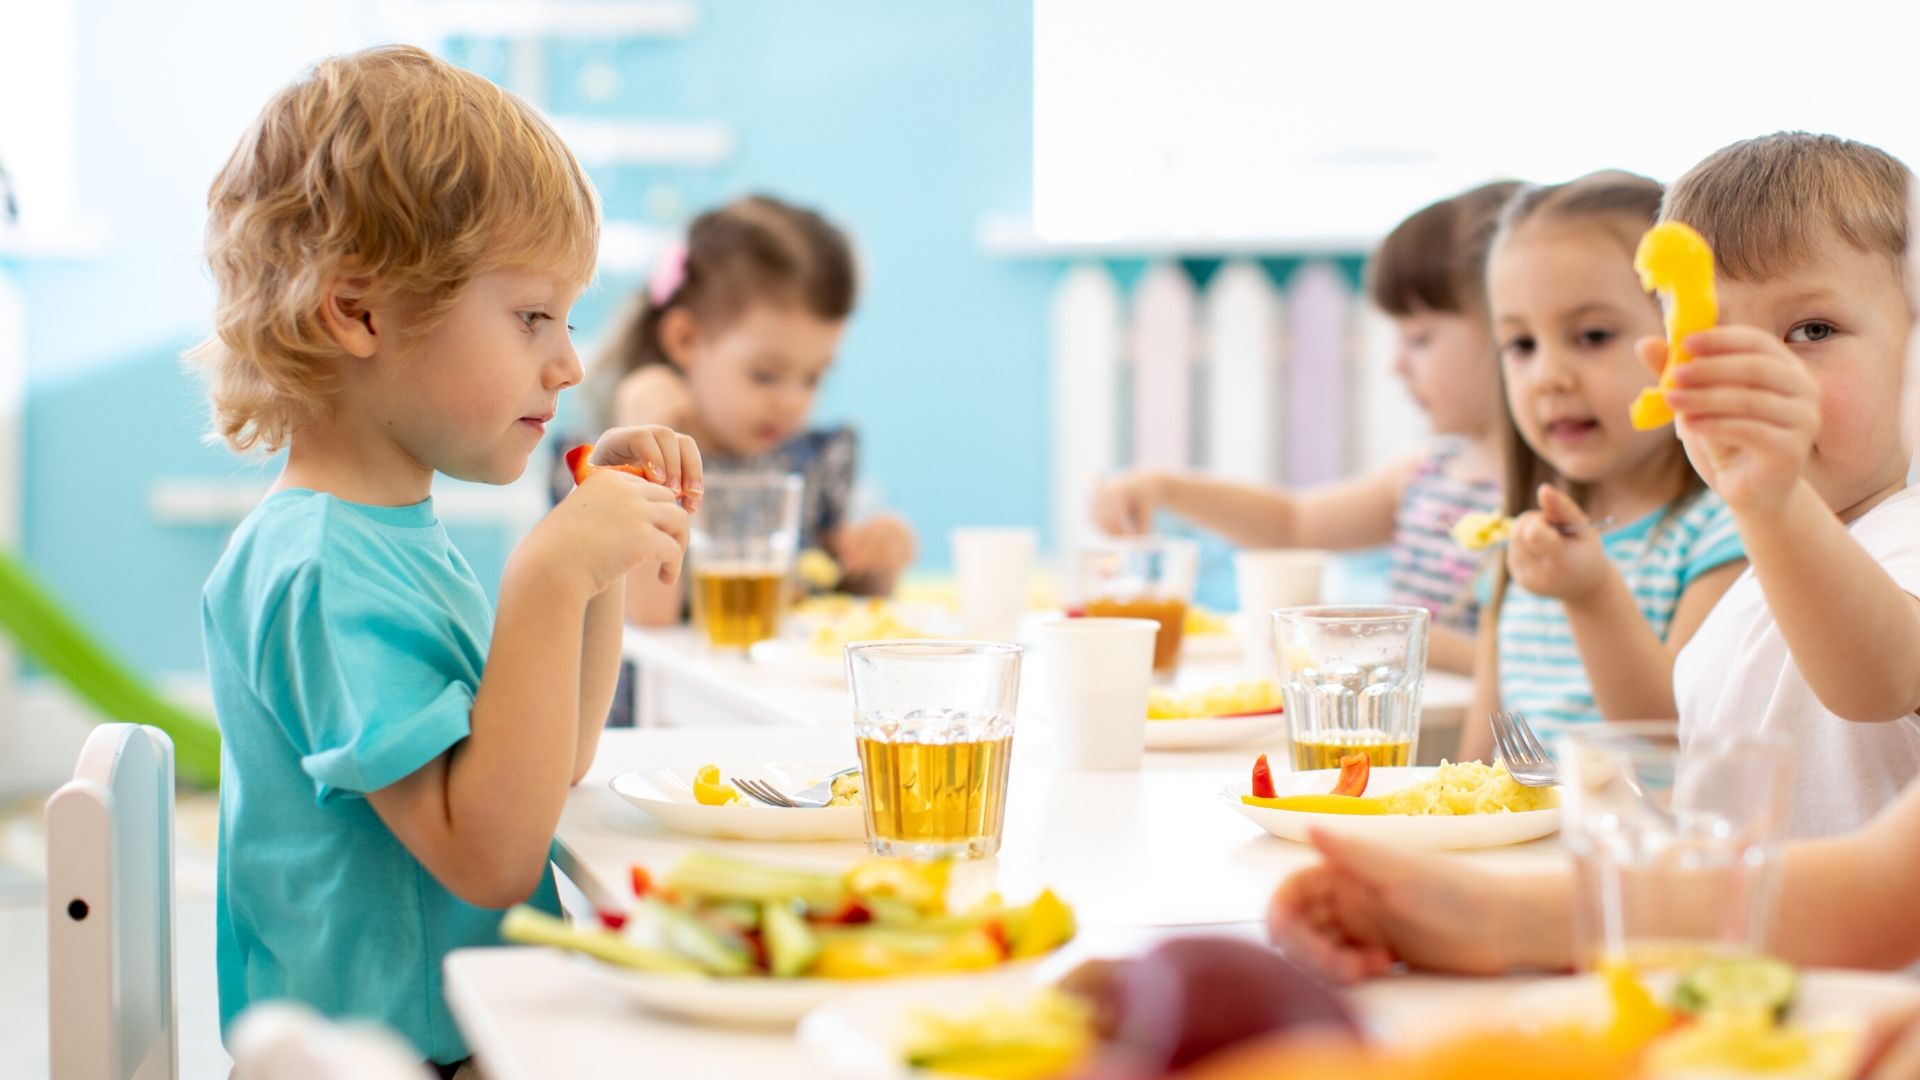 PReschool children eating a meal